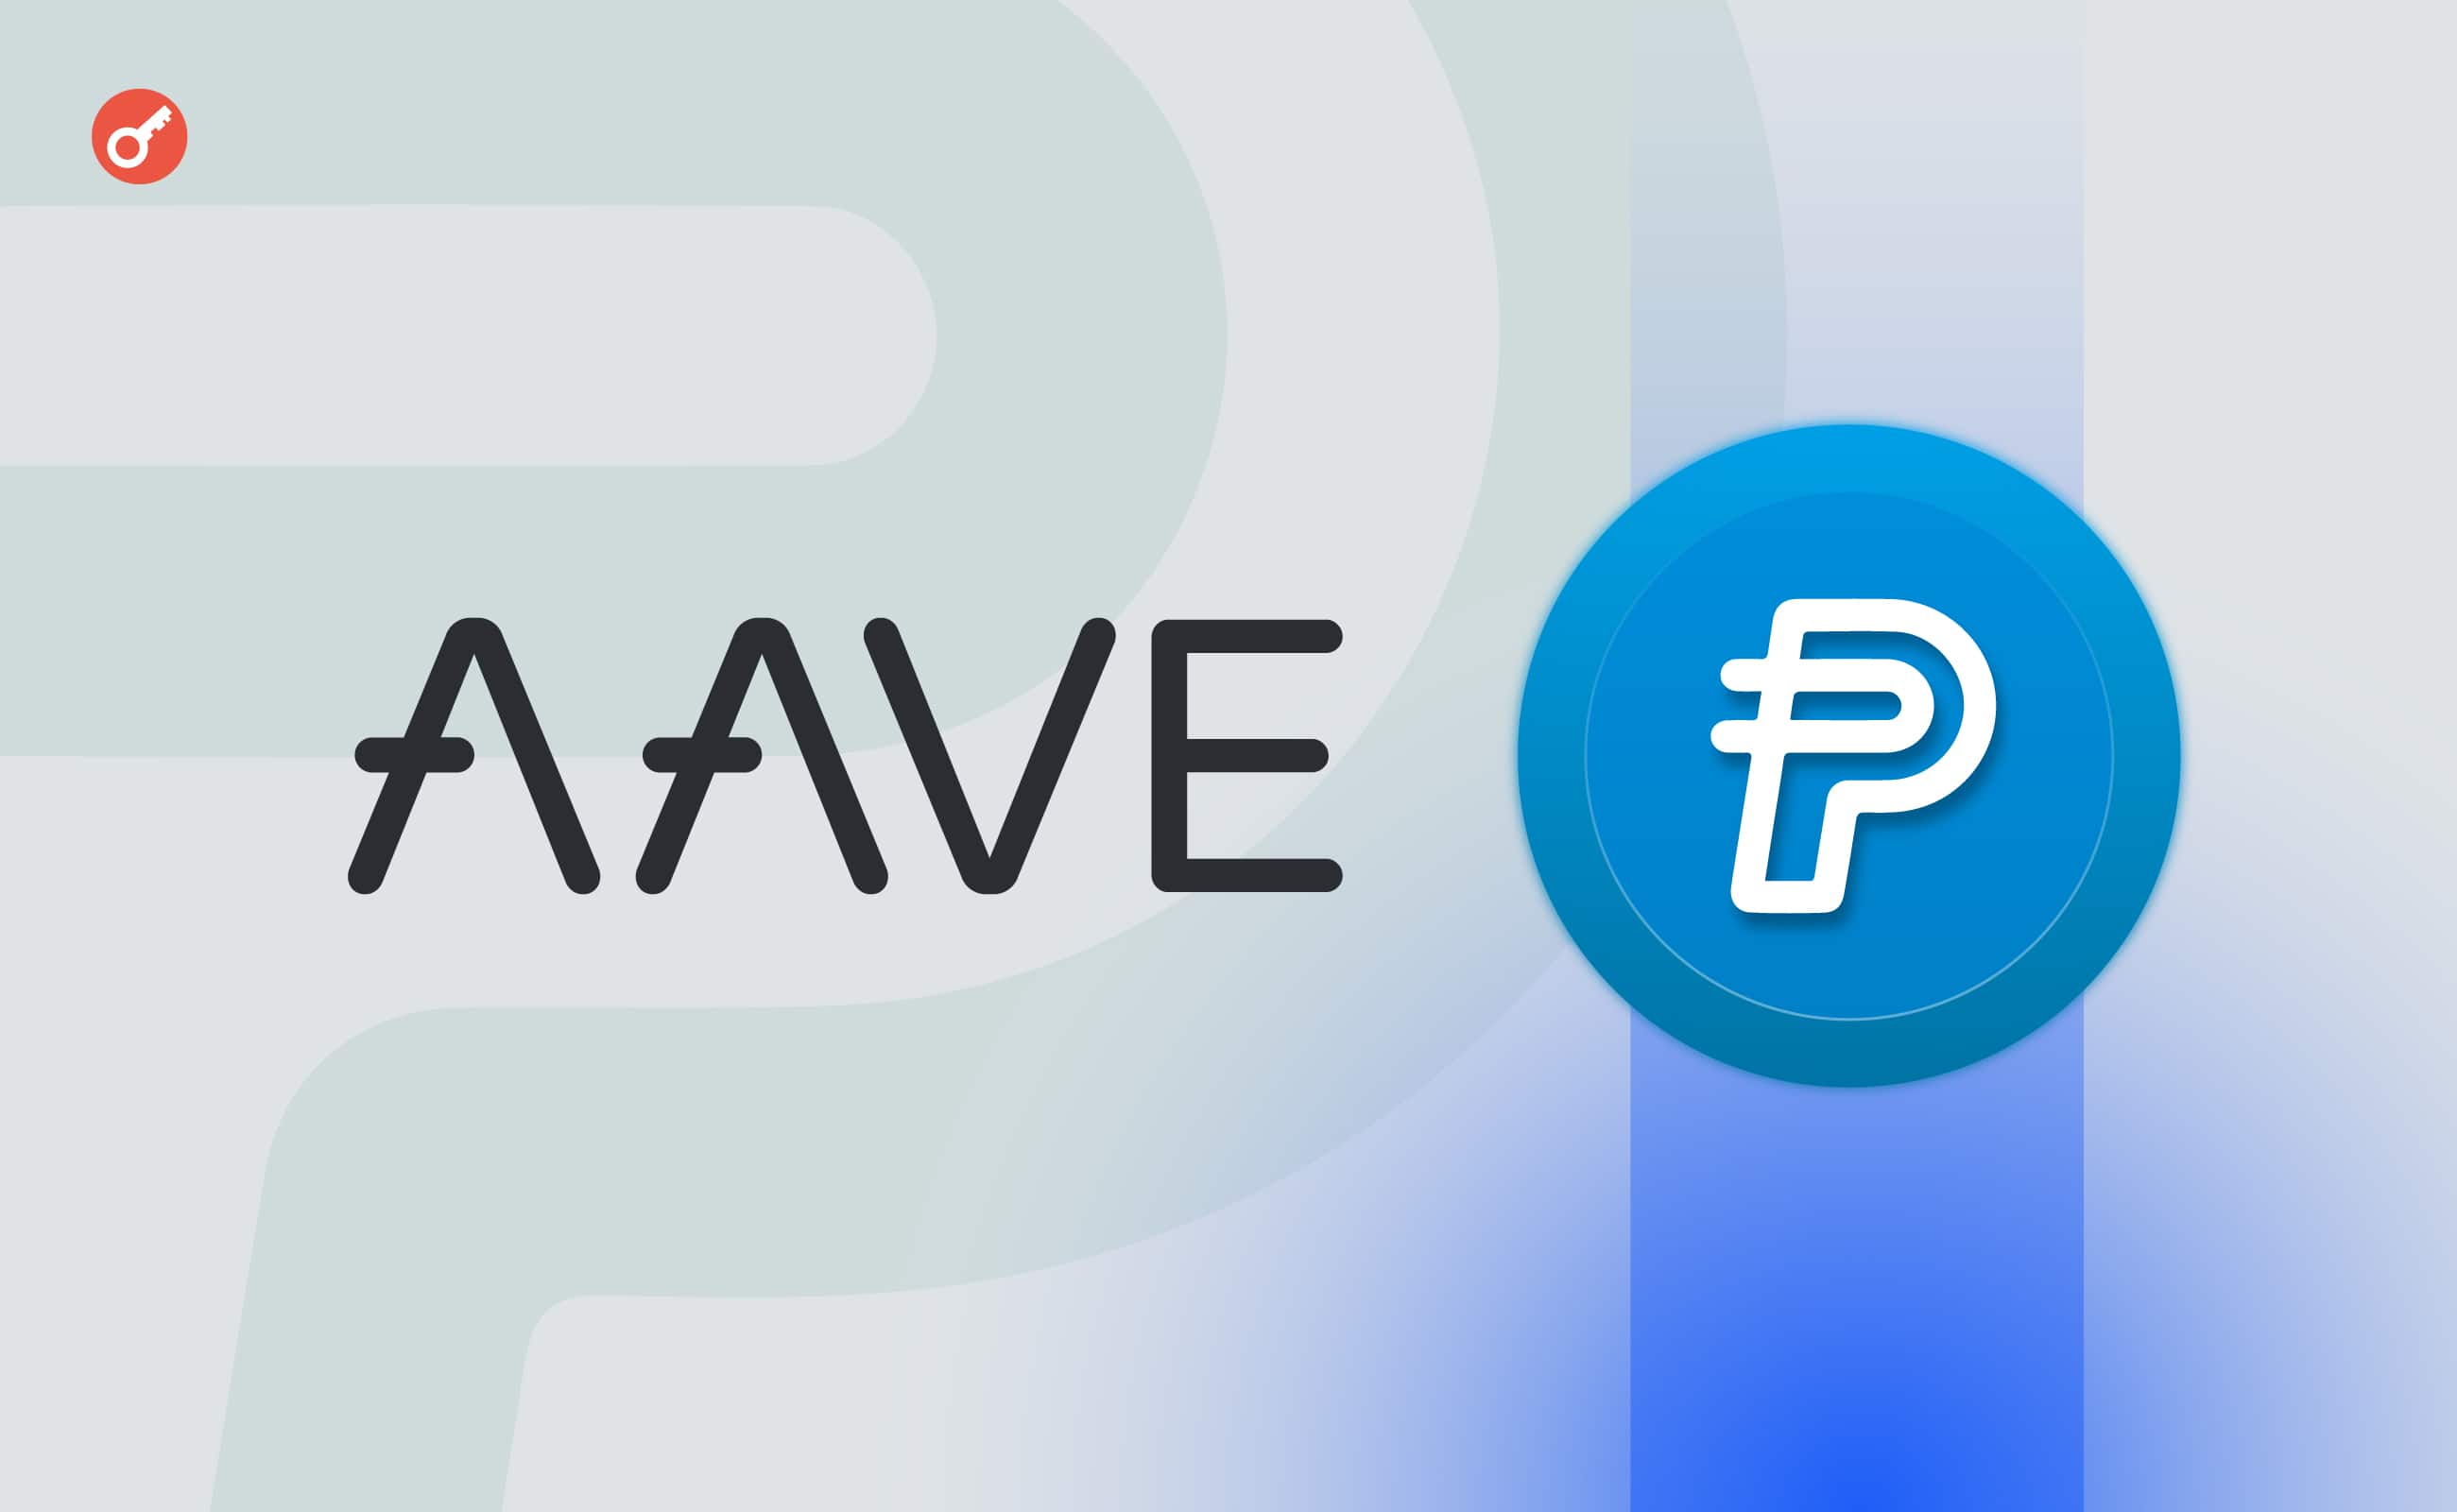 Сообщество Aave поддержало интеграцию стейблкоина Paypal. Заглавный коллаж новости.